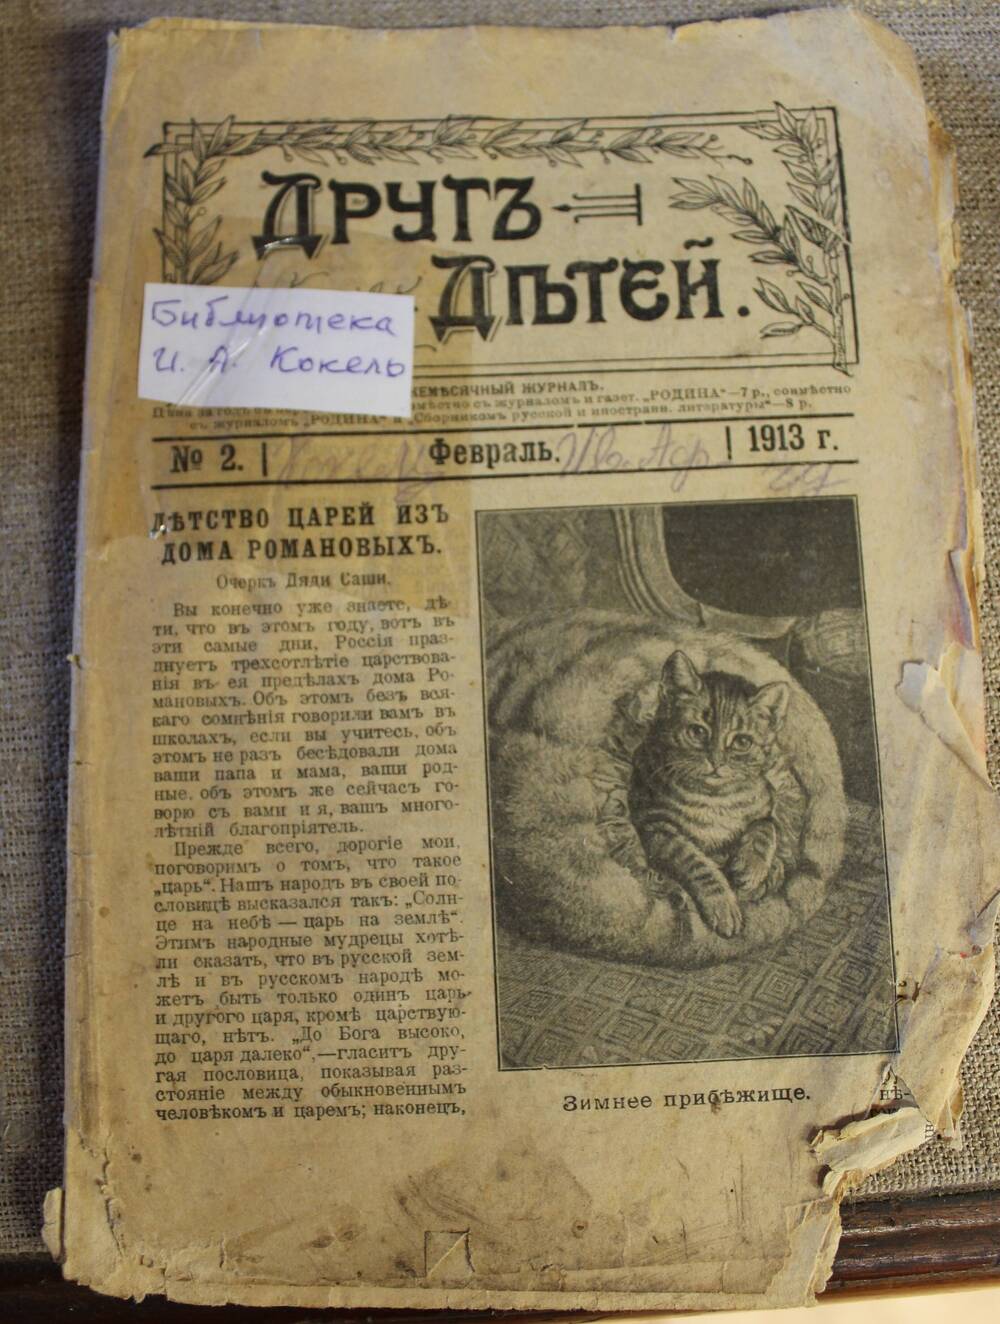 Ежемесячный журнал. Друг детей. №2, февраль 1913 г.